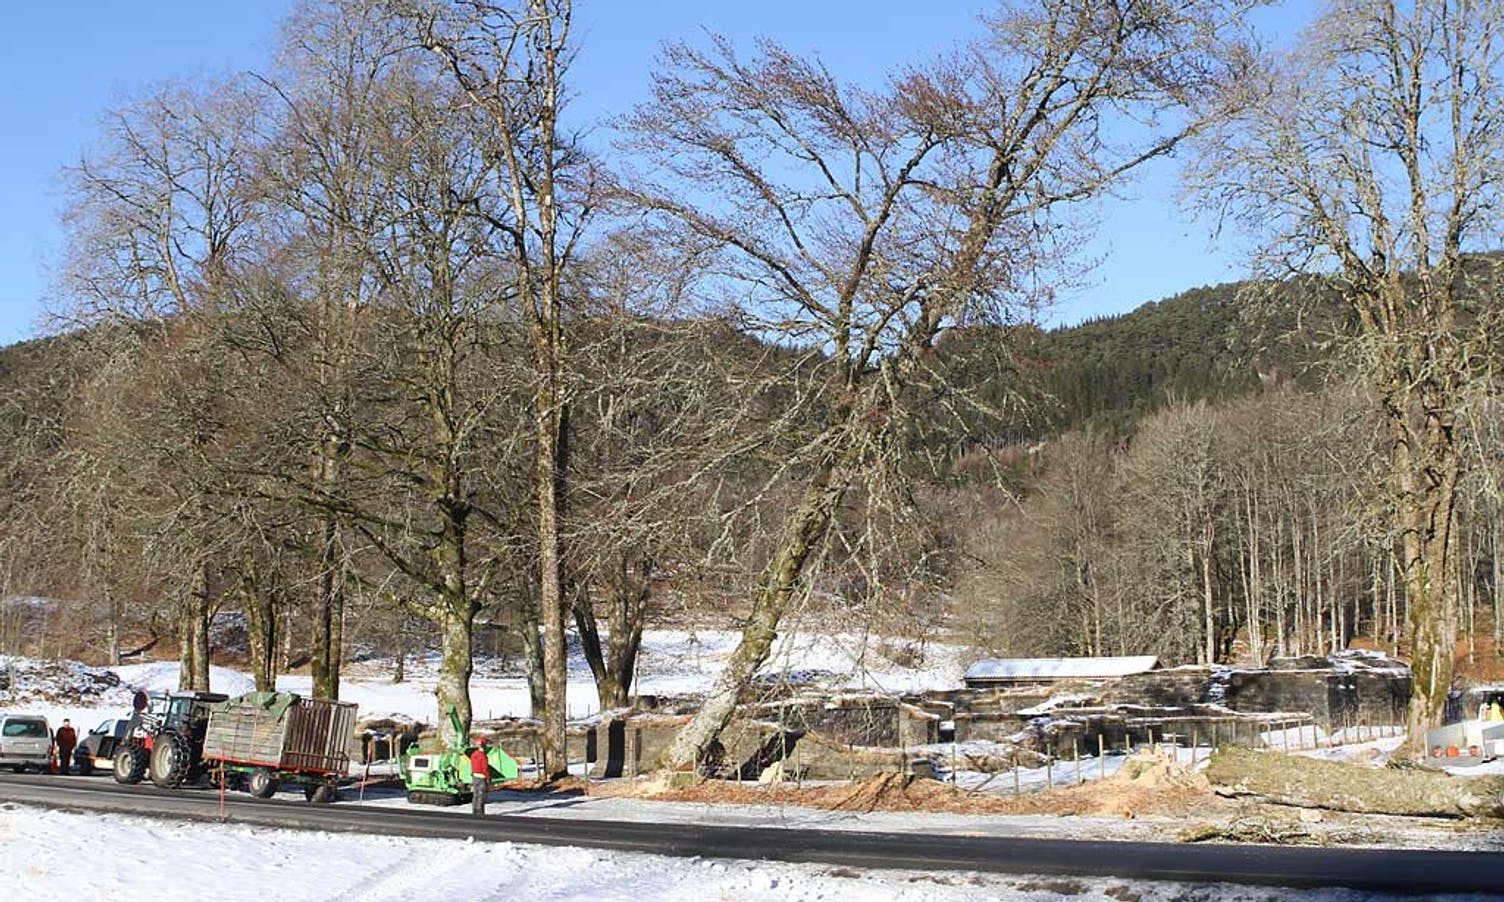 11. februar i fjor gjekk almen ved Lyse kloster i bakken. (Foto: Kjetil Vasby Bruarøy)